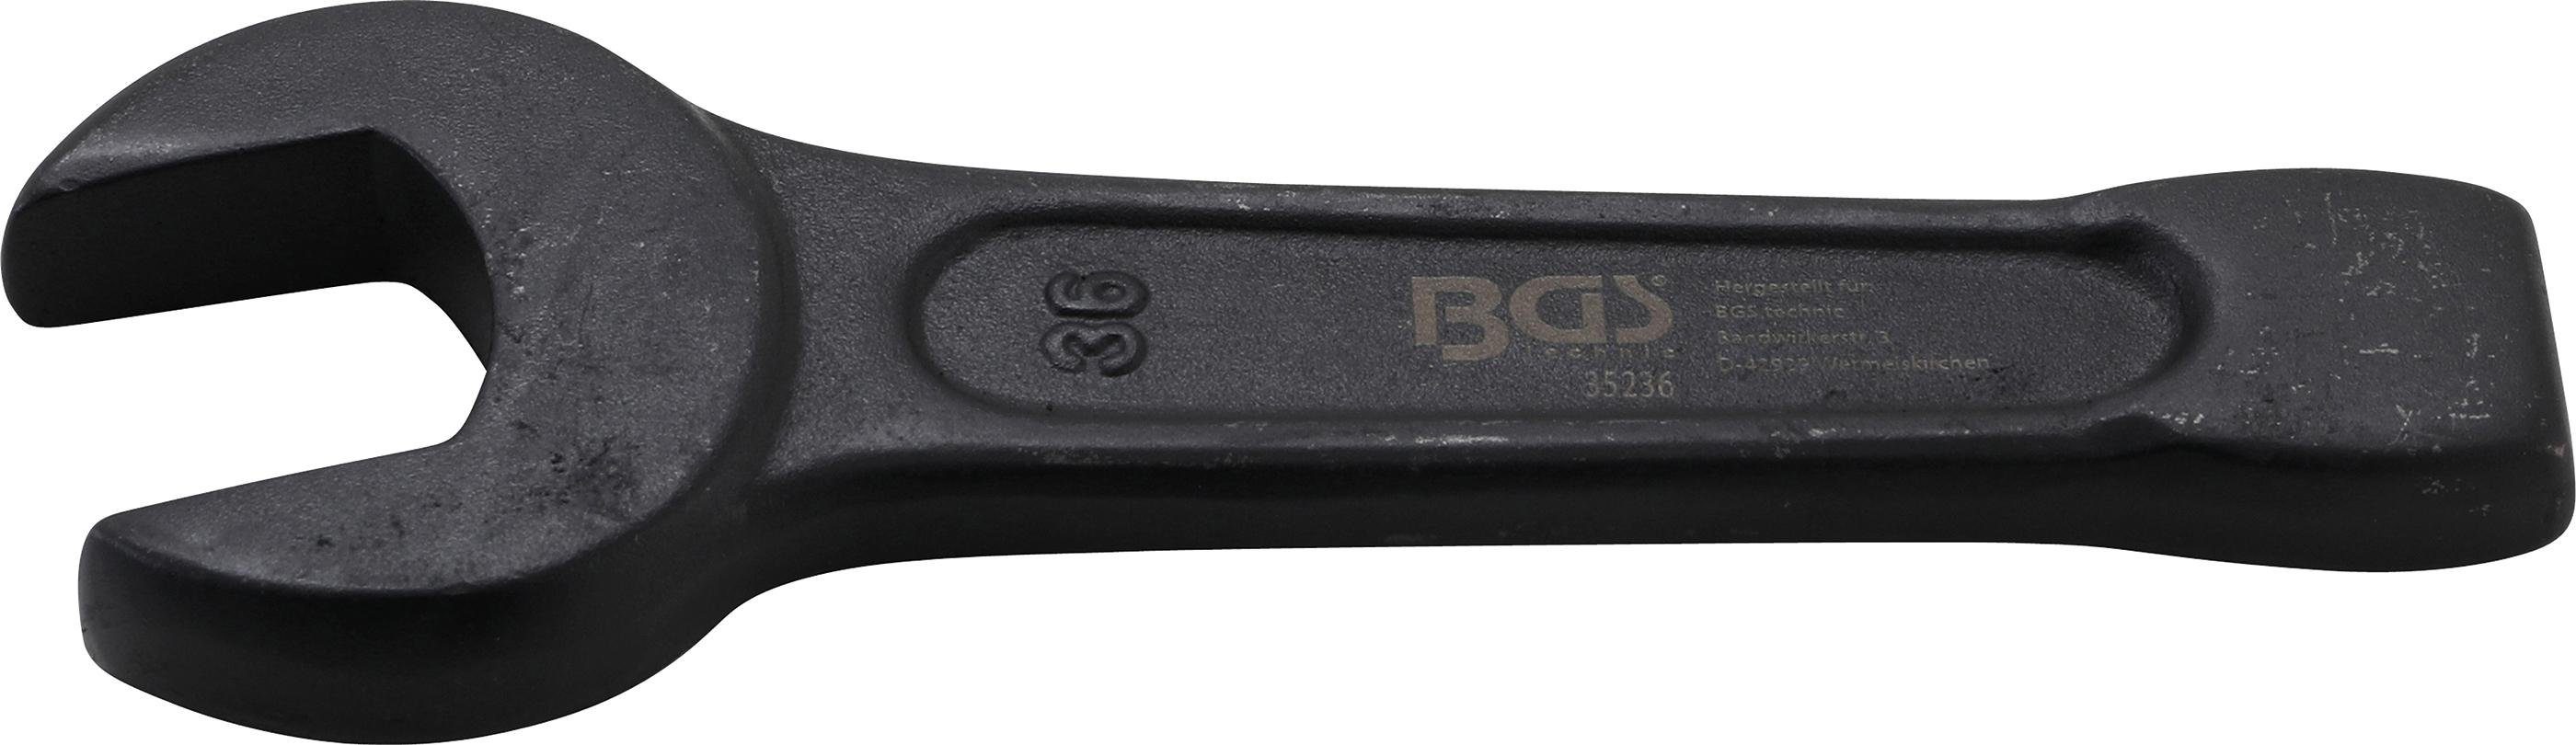 BGS Schlag-Maulschlüssel, mm SW 36 Maulschlüssel technic